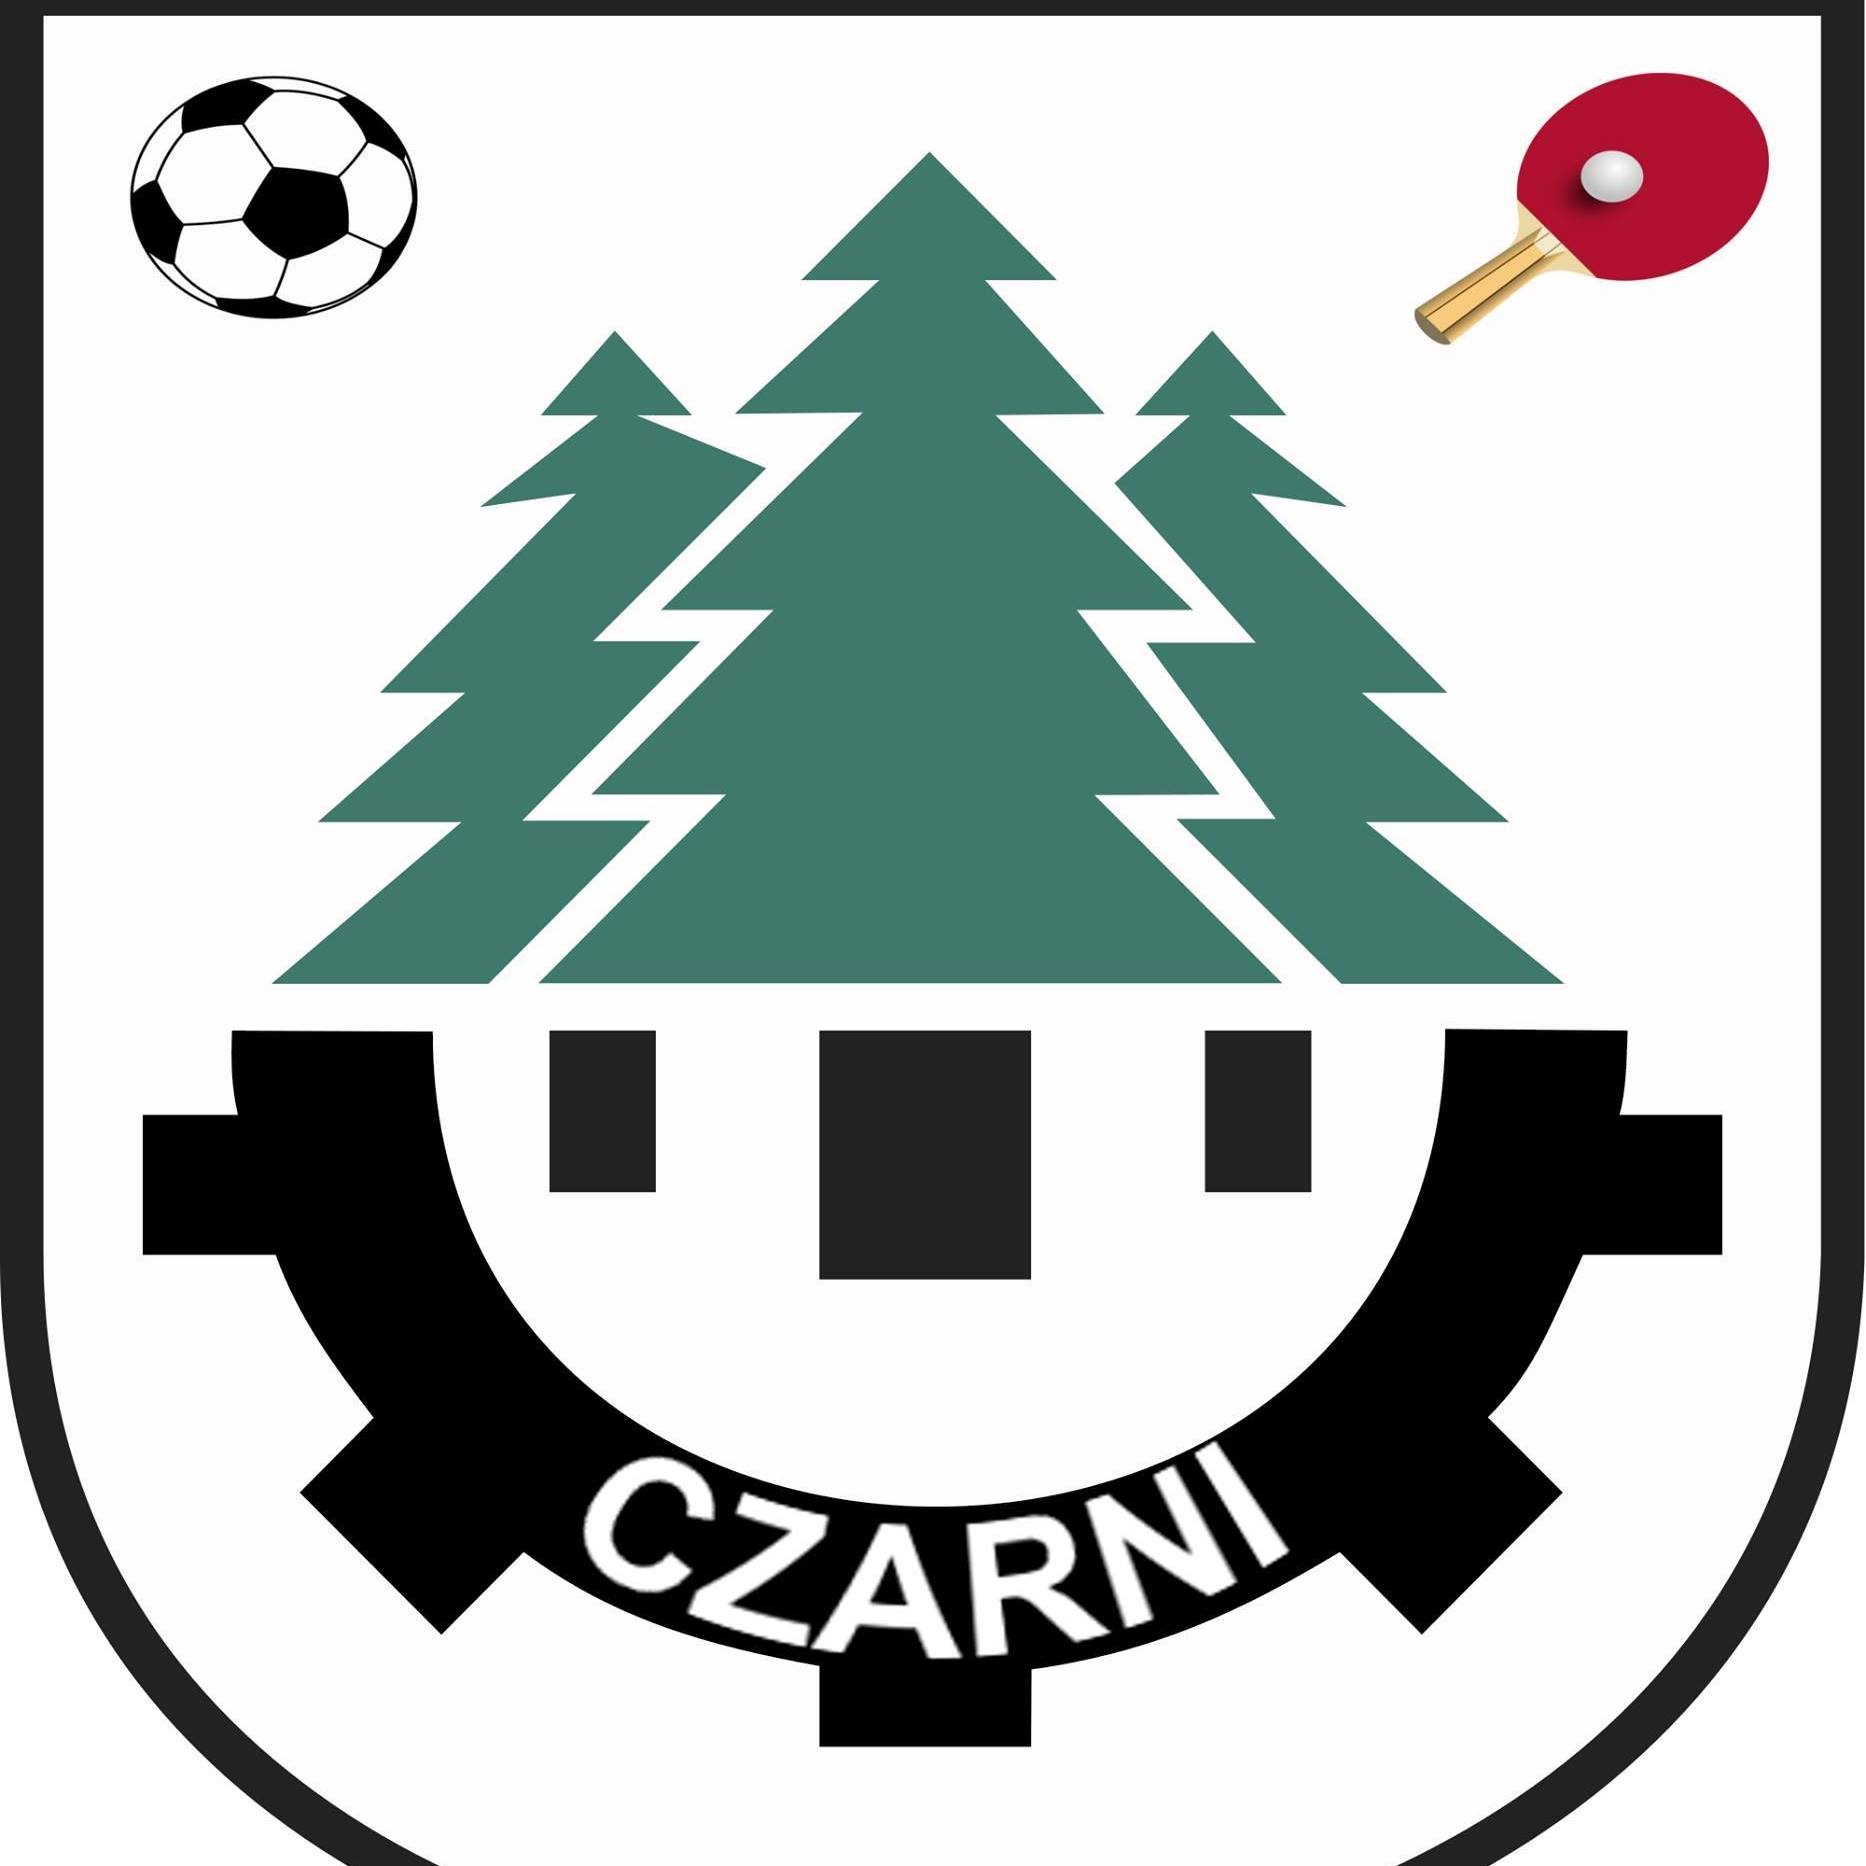 Wappen Czarni Czarna Białostocka